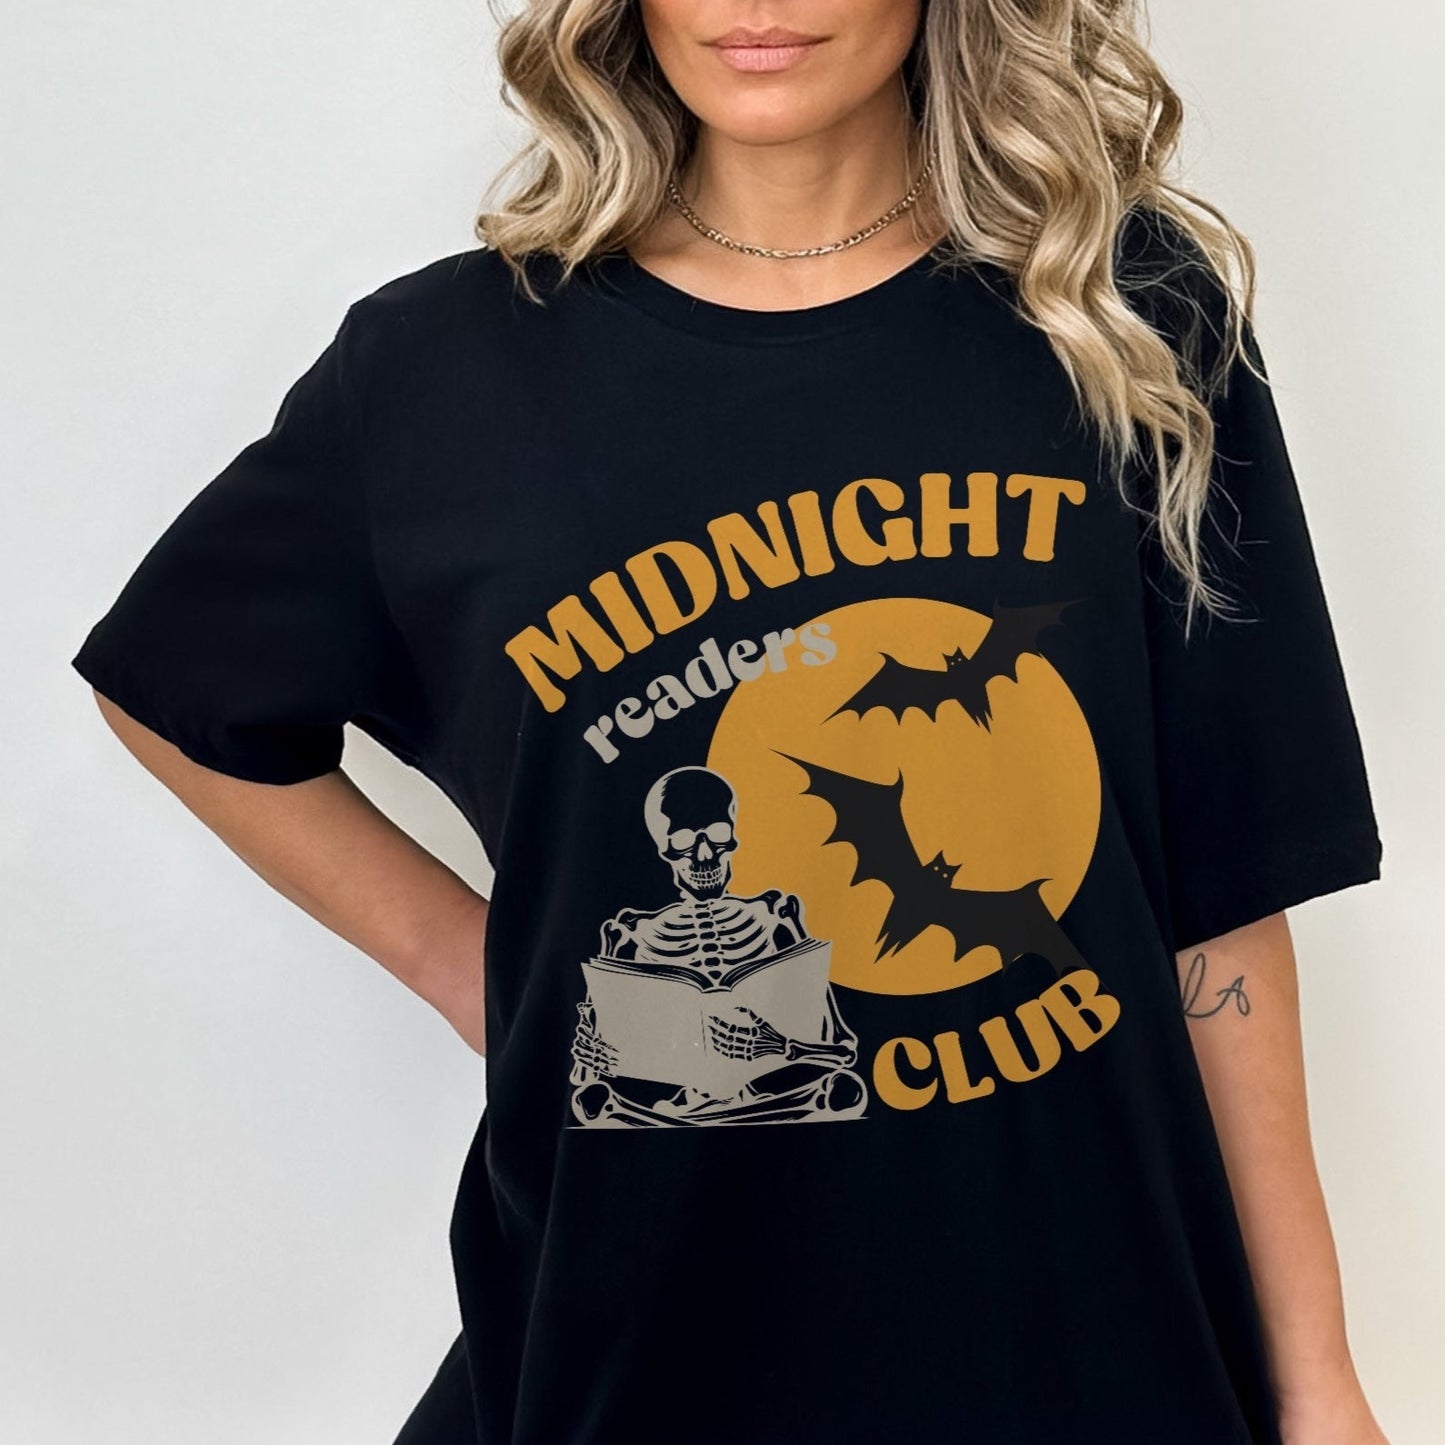 Midnight Readers Club Tee - Halloween Bookish Shirt